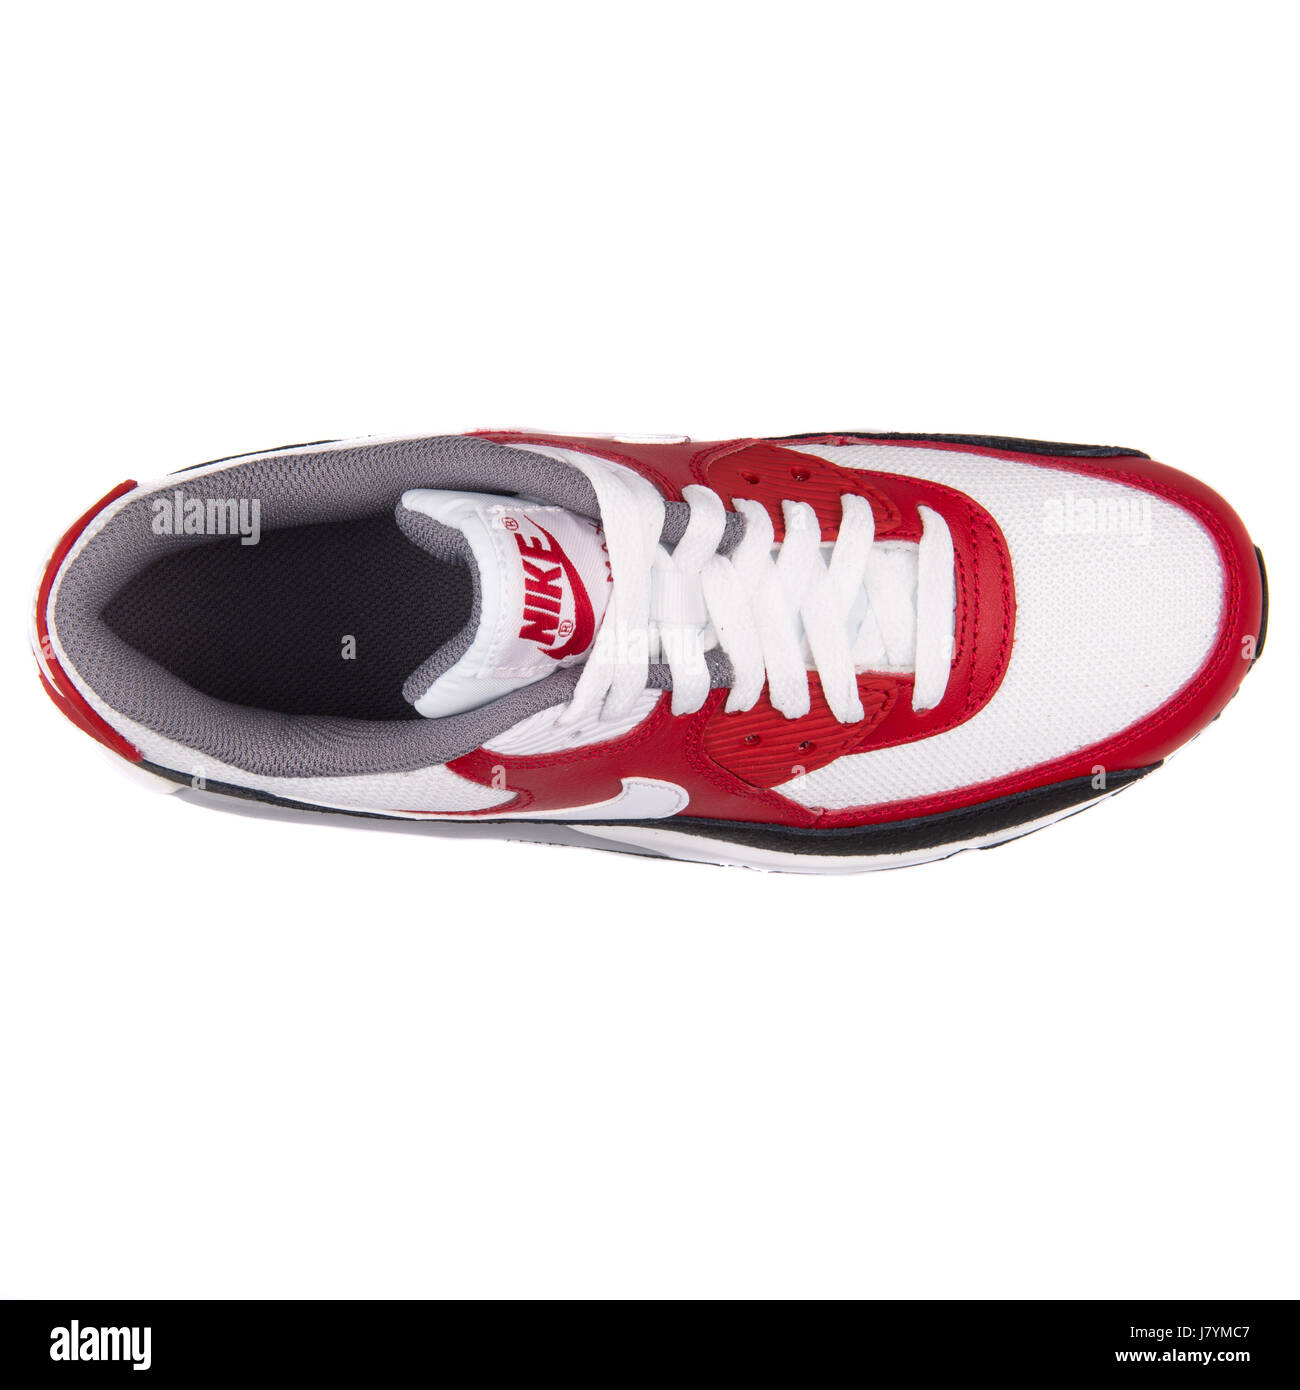 Nike Air Max 90 Mesh (GS) rot weiß und schwarz Jugend Sport-Sneaker -  724824-102 Stockfotografie - Alamy